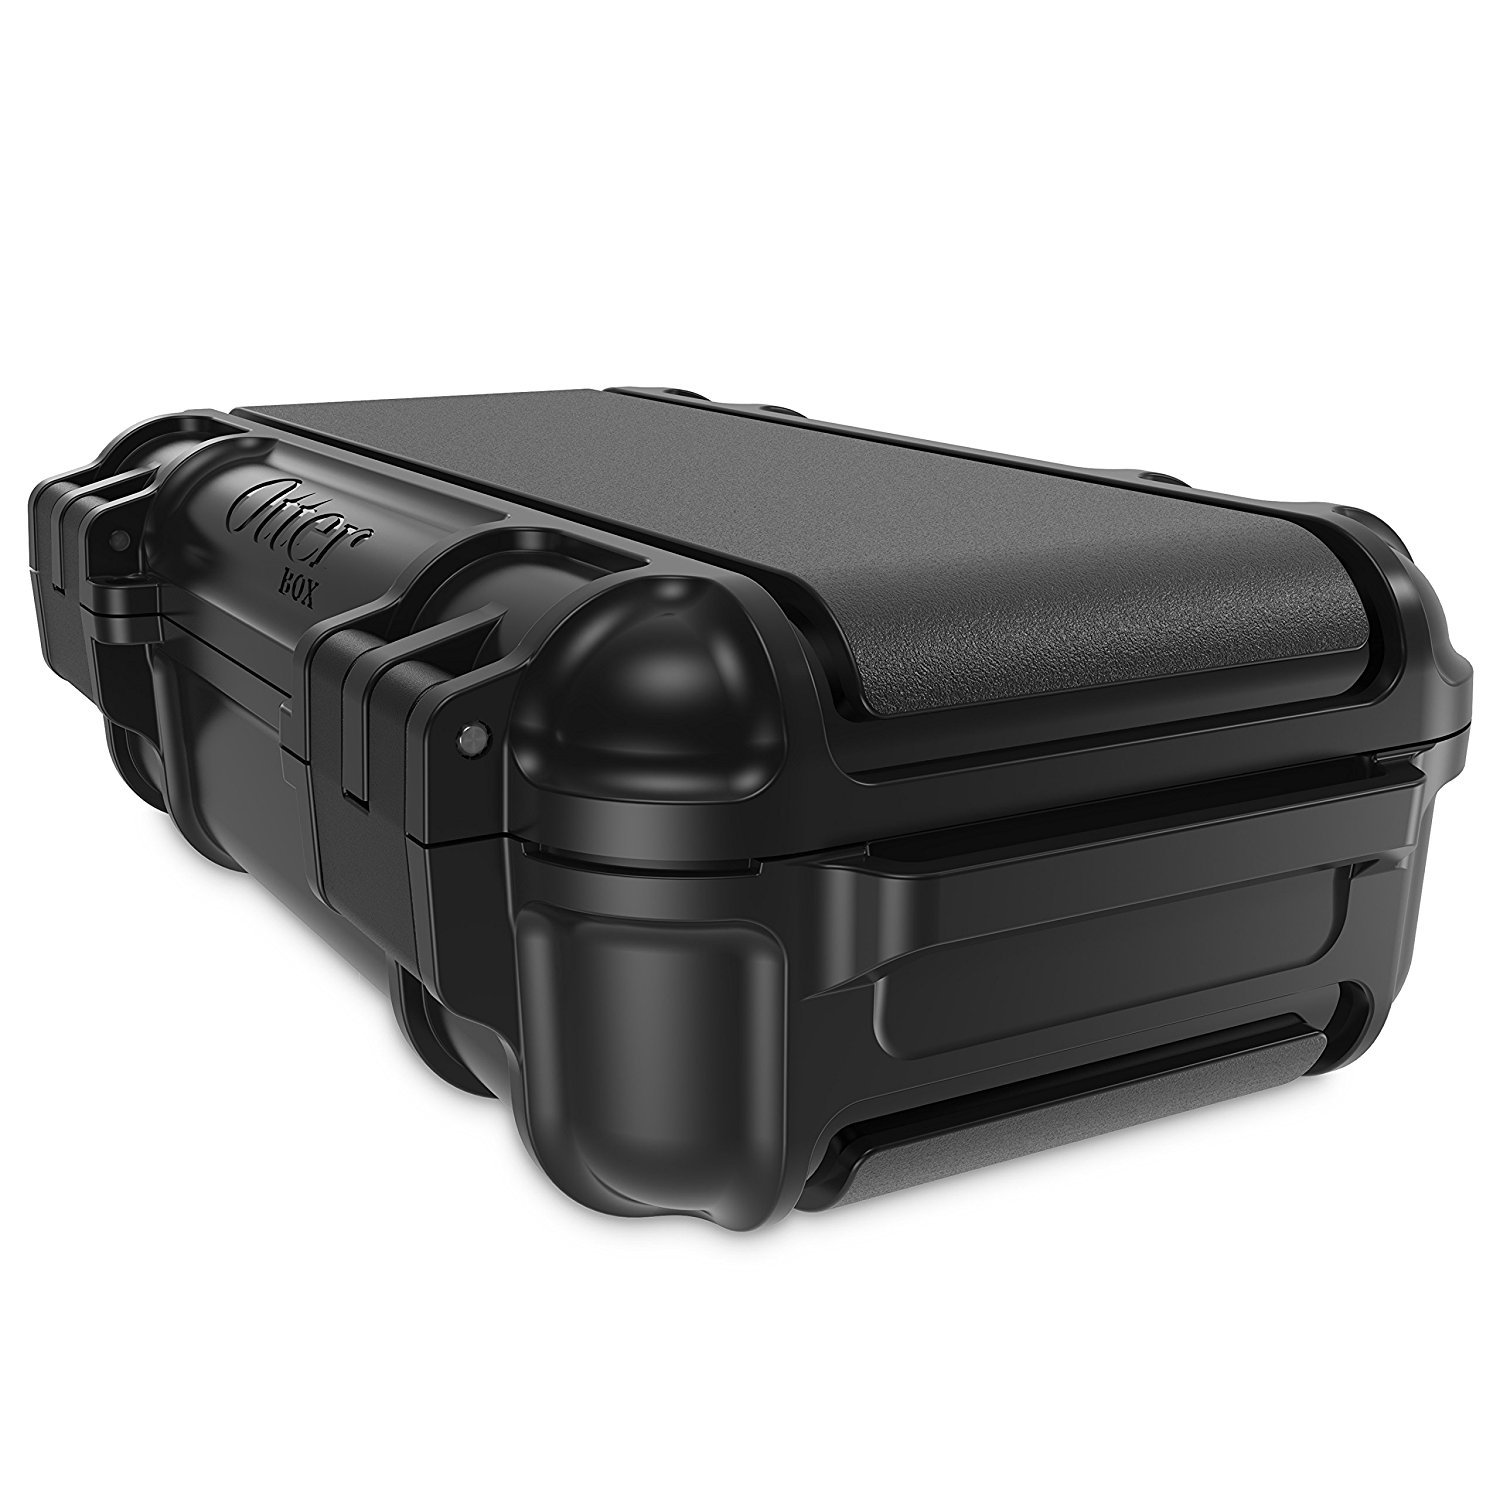 OtterBox 3250 Series 0.9 Liter Small Lockable Waterproof Storage Drybox, Black - image 3 of 8